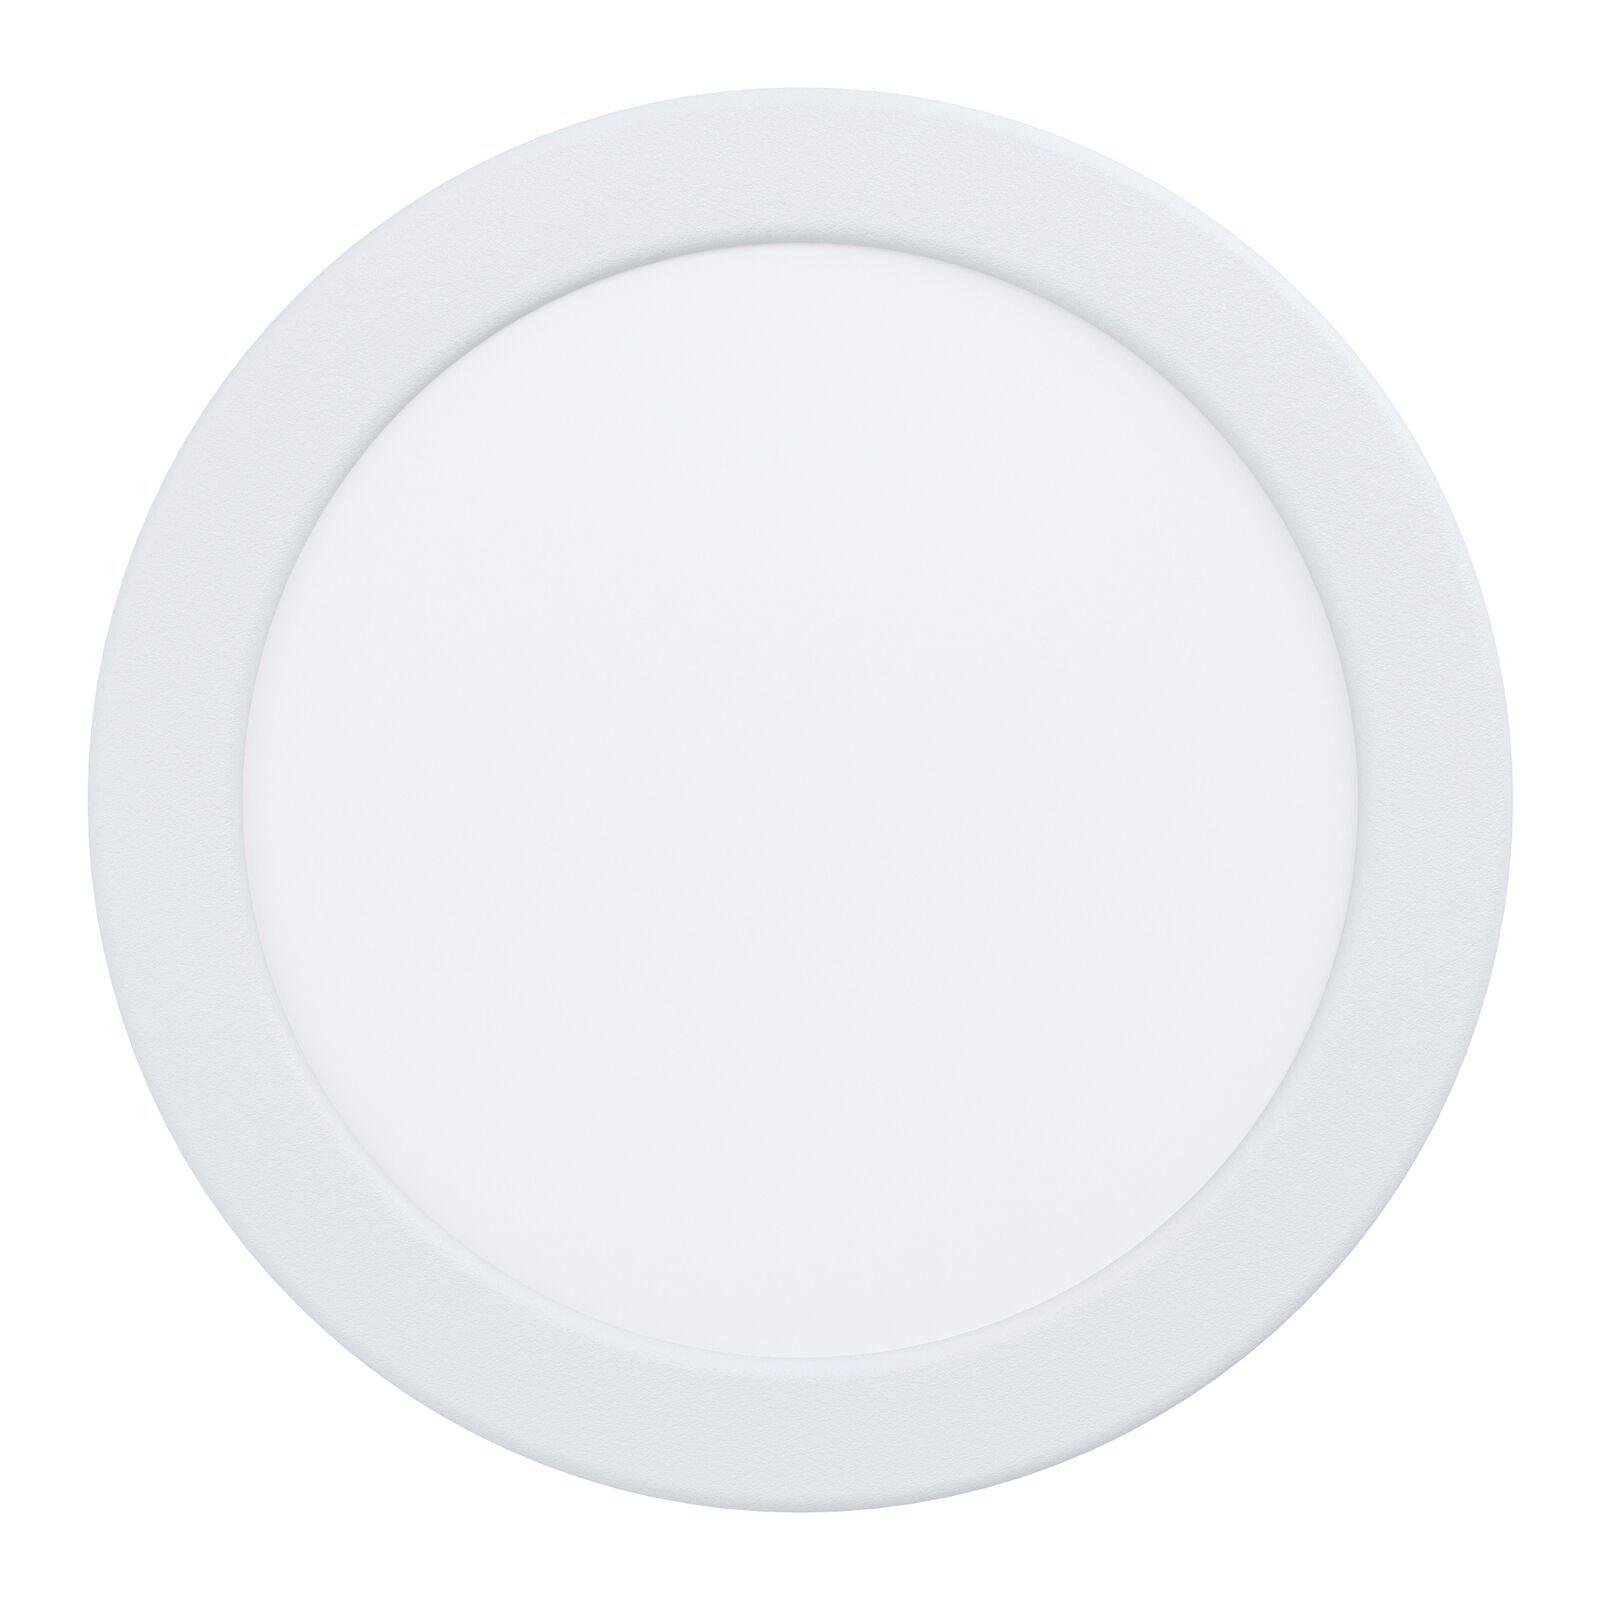 Wall / Ceiling Flush Downlight White Round Spotlight 10.5W Built in LED 4000K